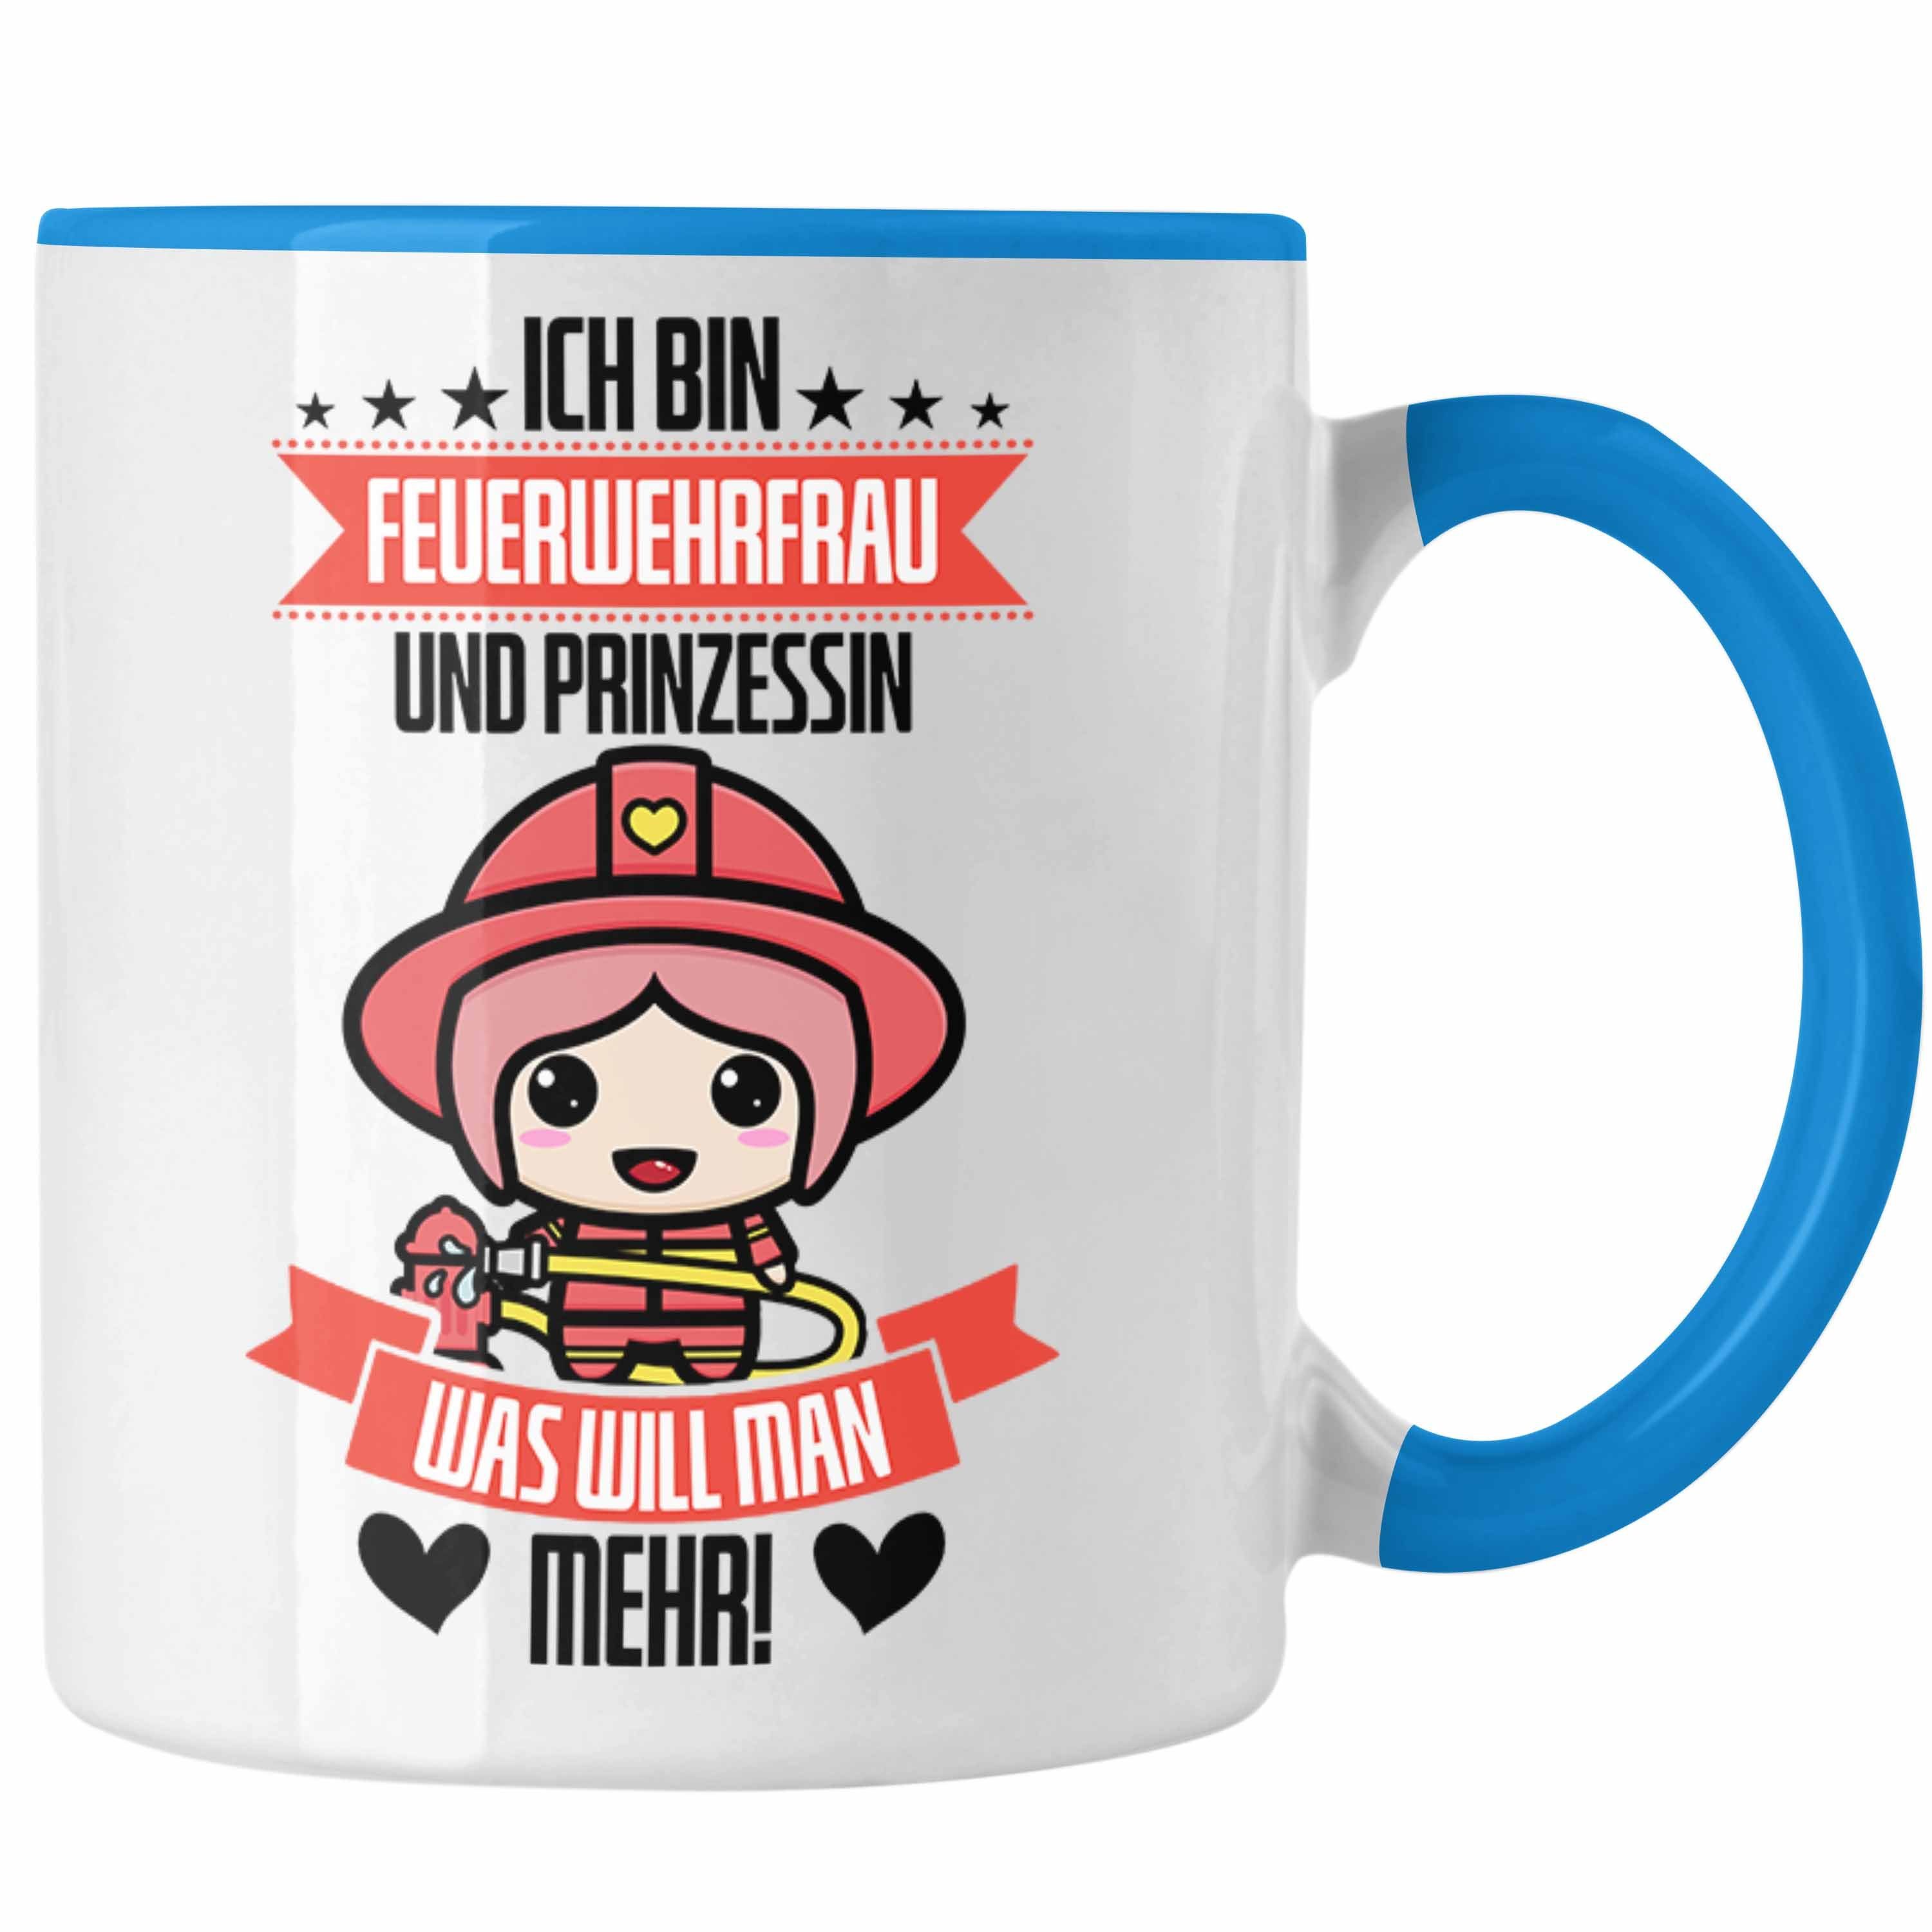 für Feuerwehr Trendation Tasse Lustige der in Frauen Feuerwehrfrau Blau Geschenk Tasse Prinz